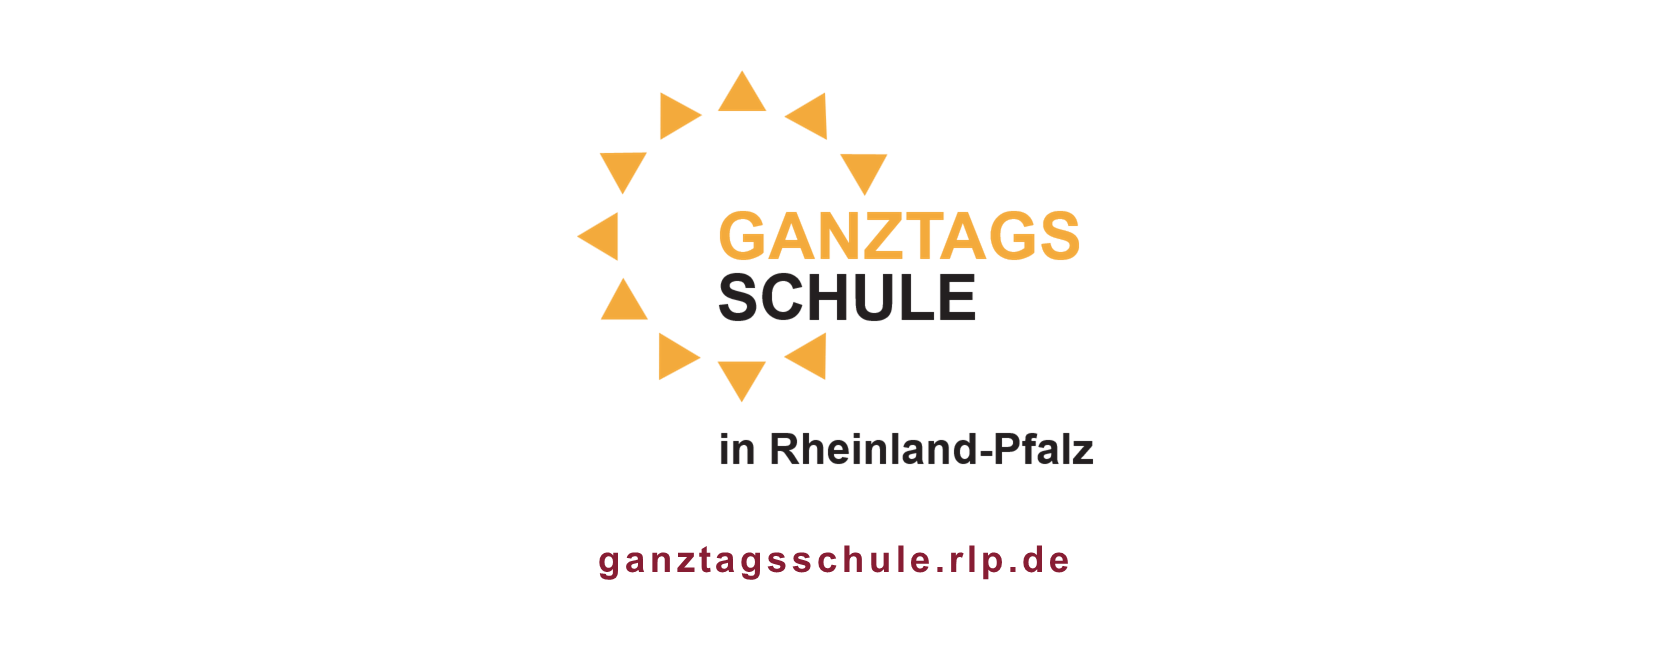 Logo Ganztagsschule Rheinland-Pfalz und URL ganztagsschule.rlp.de